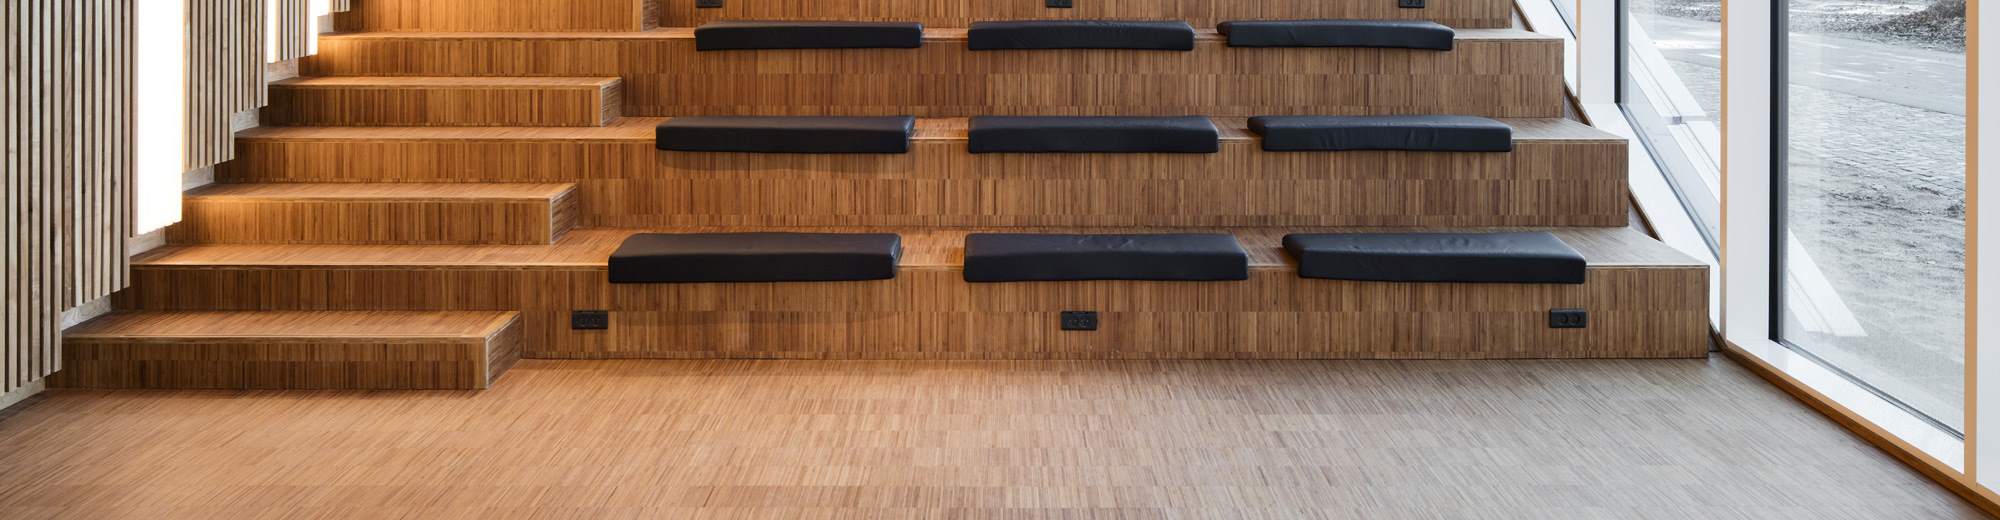 Sittetrapper og auditorium i bambus